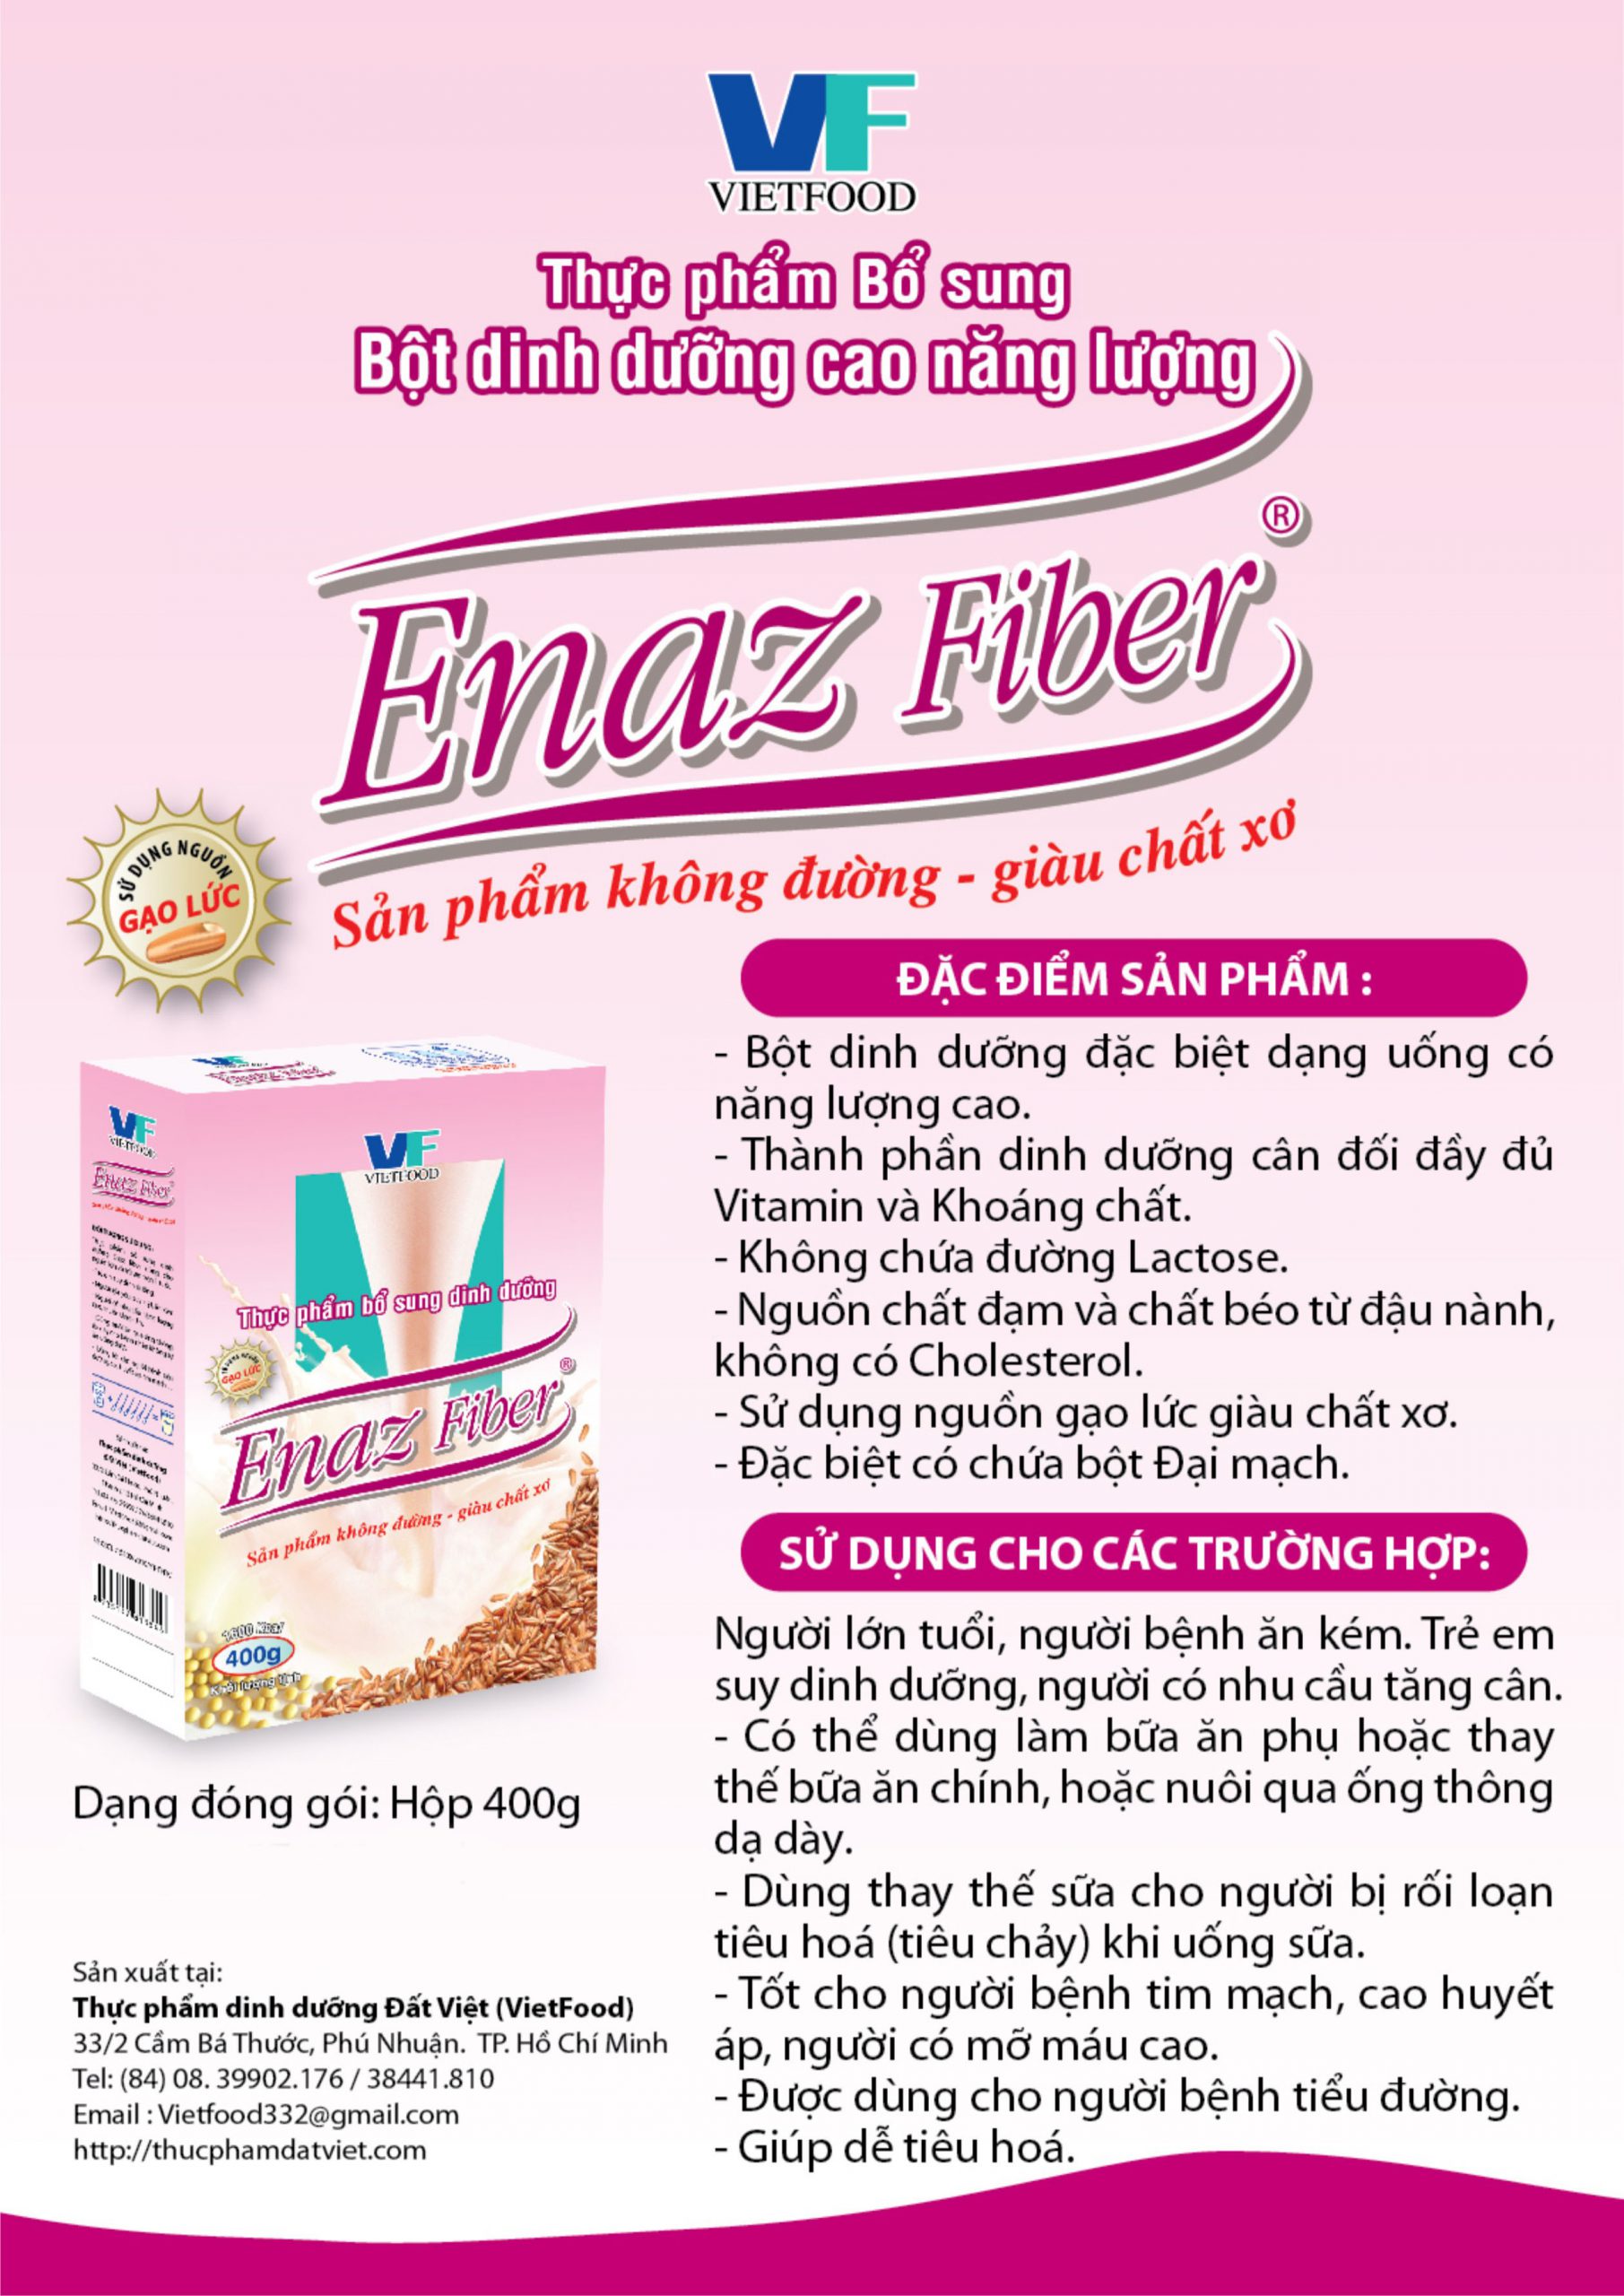 Đặc điểm của sản phẩm bột dinh dưỡng enaz fiber